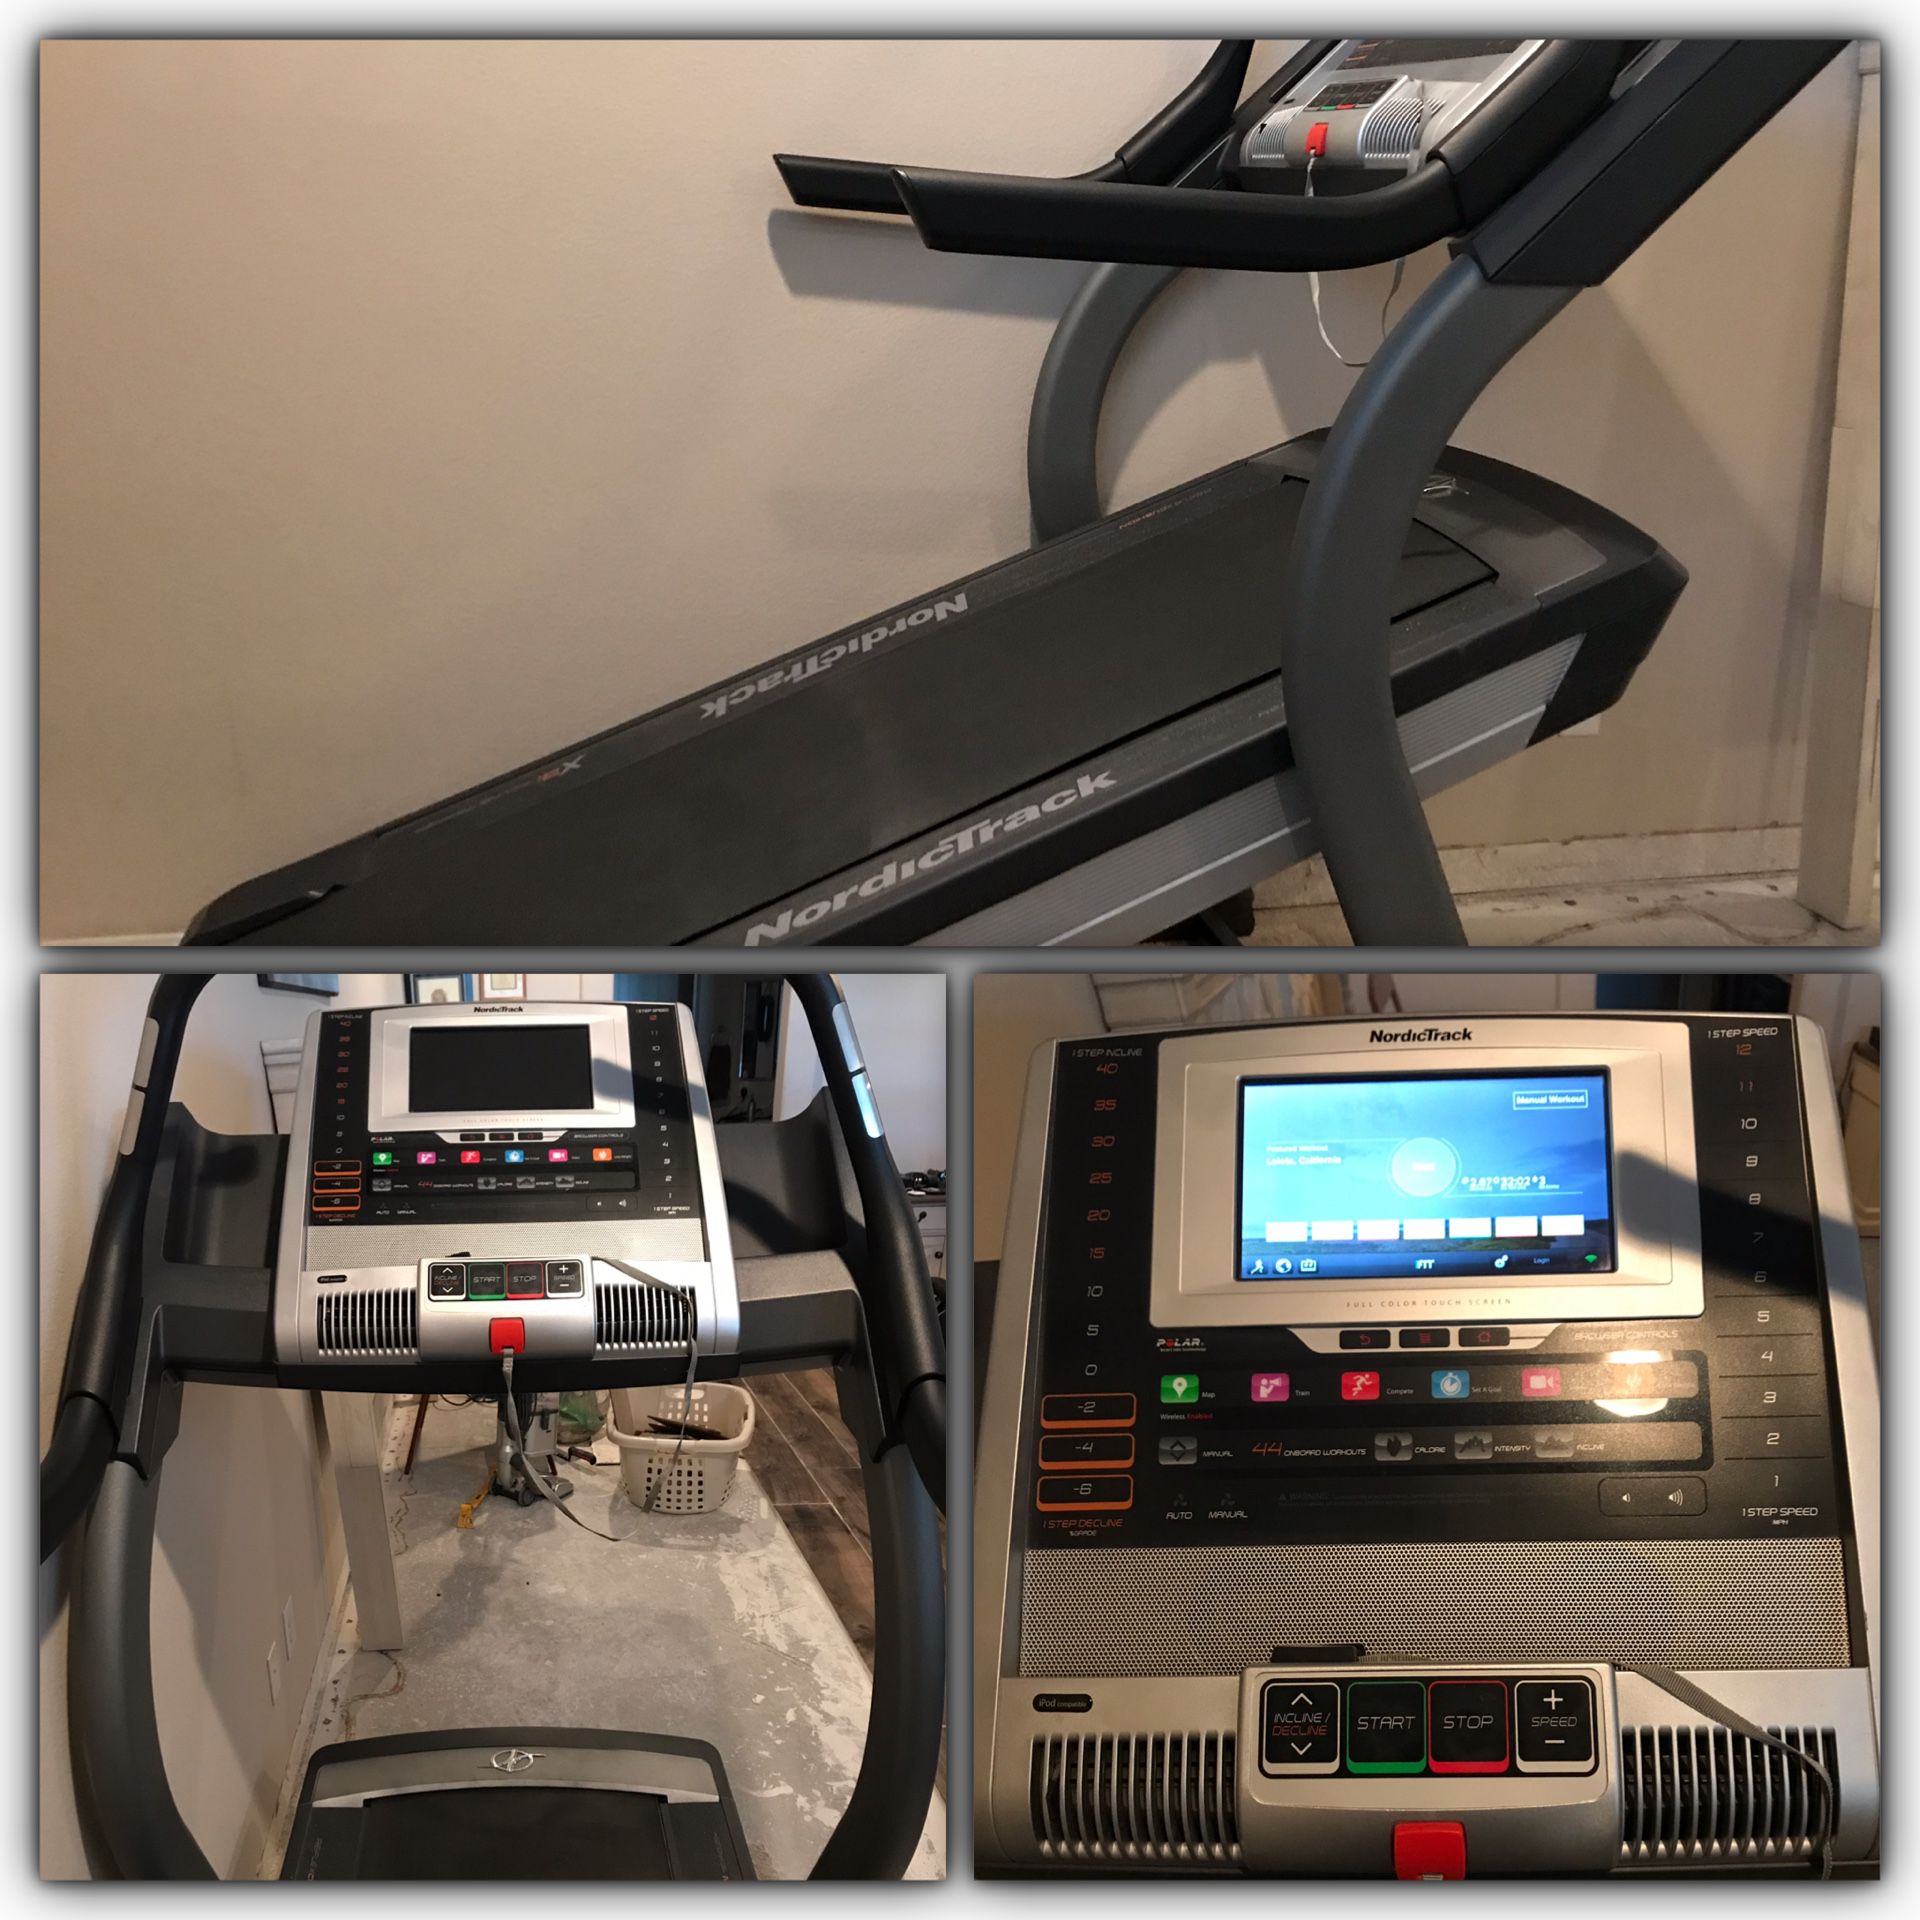 NordicTrack x9i Treadmill